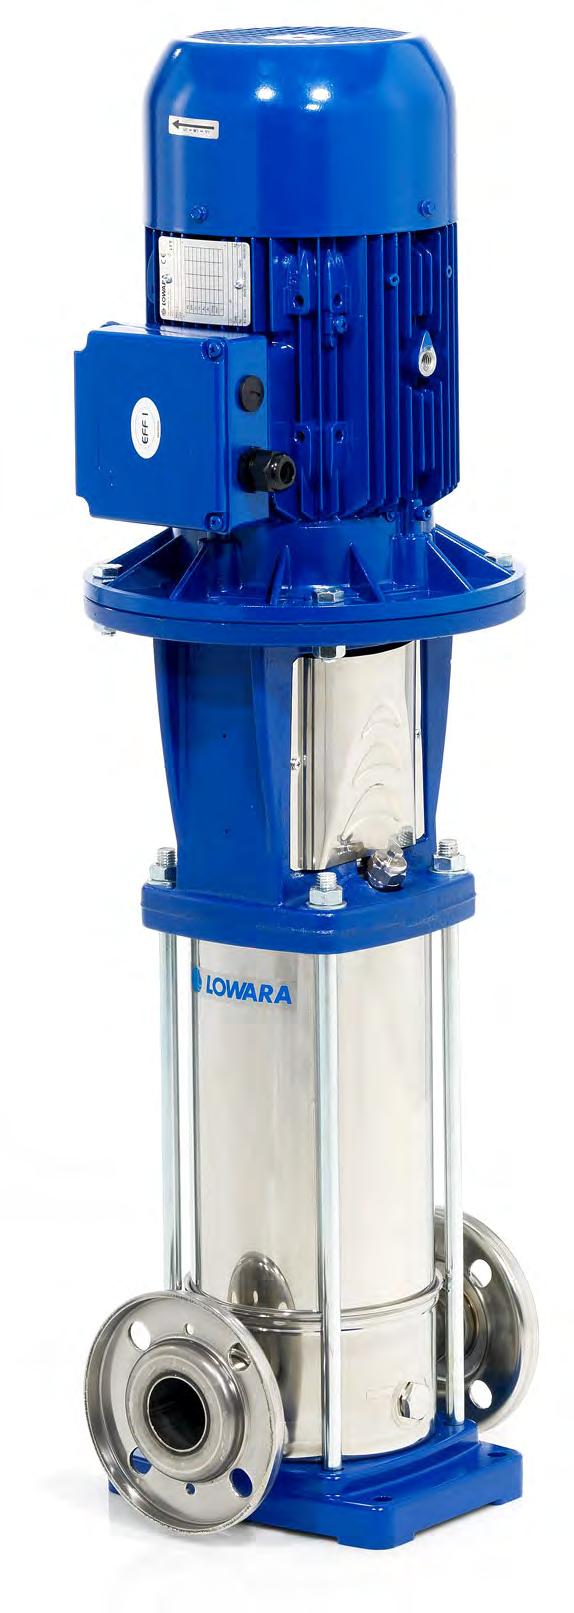 Vattenförsörjning Lowara e-sv Trygg och energieffektiv tryckstegring Pumpar i rostfritt stål som uppfyller WRAS-standarden för pumpning av dricksvatten.